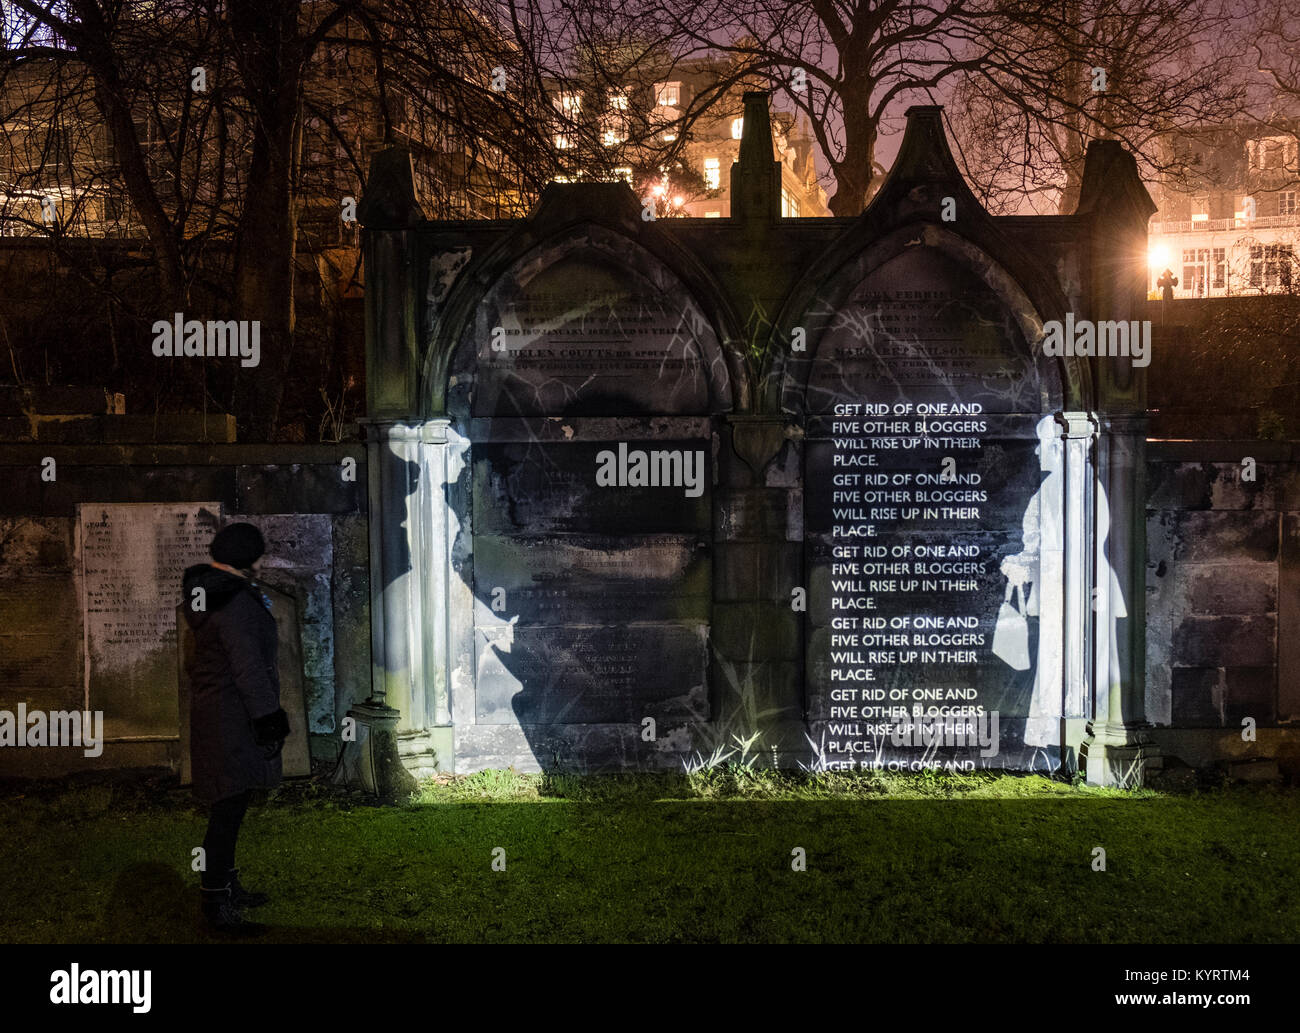 Thema Val McDermid's Kurzgeschichte "Auferstehung" des neuen Jahres, Nachricht vom Himmel, in der Nacht an mehreren Standorten in Edinburgh projiziert. Stockfoto